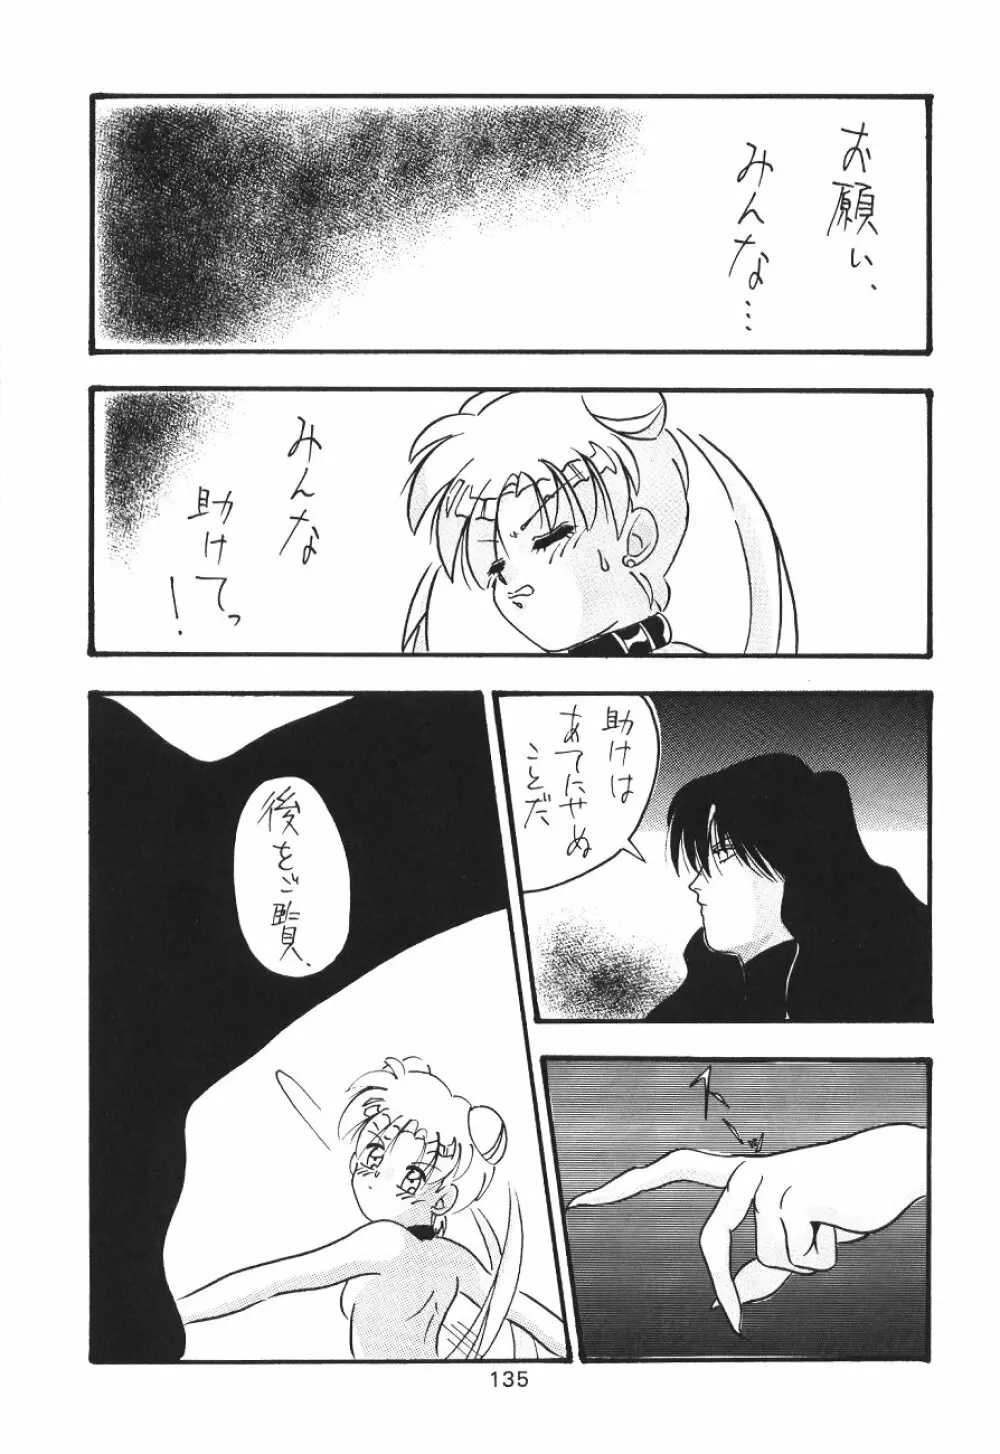 KATZE 7 上巻 - page136